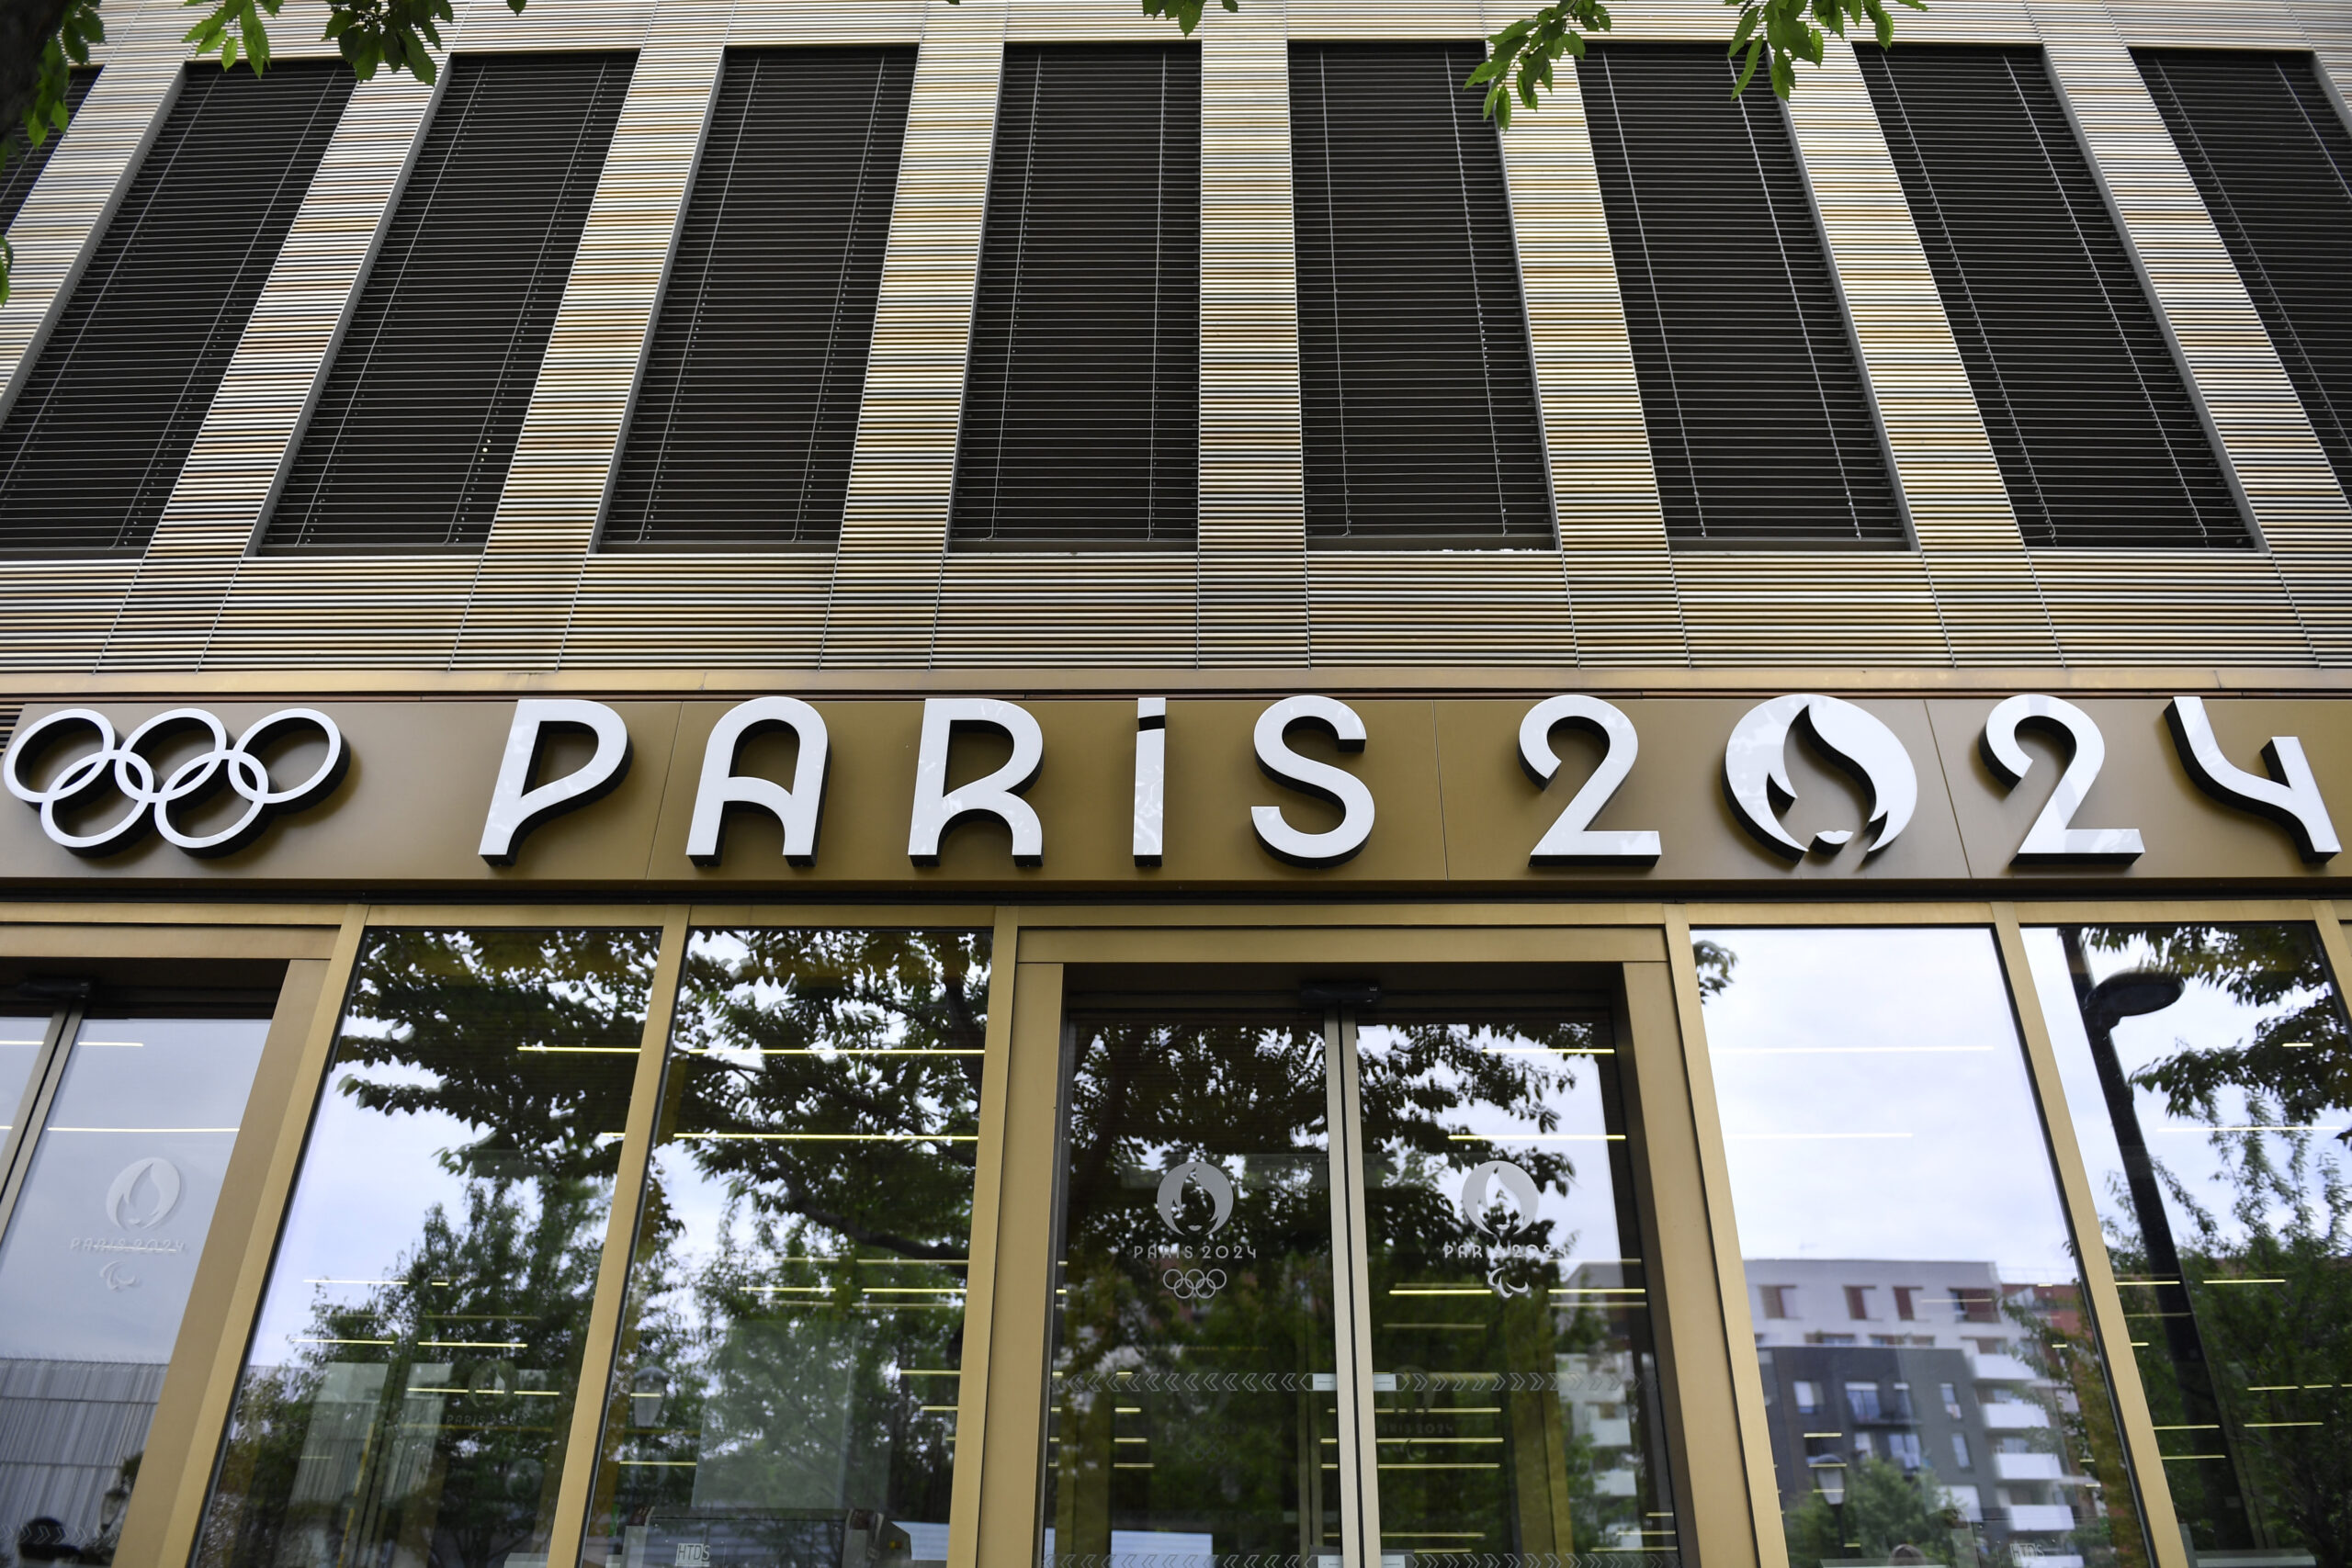 Παρίσι 2024: Έρευνα για υπεξαίρεση στα κεντρικά γραφεία των Ολυμπιακών Αγώνων